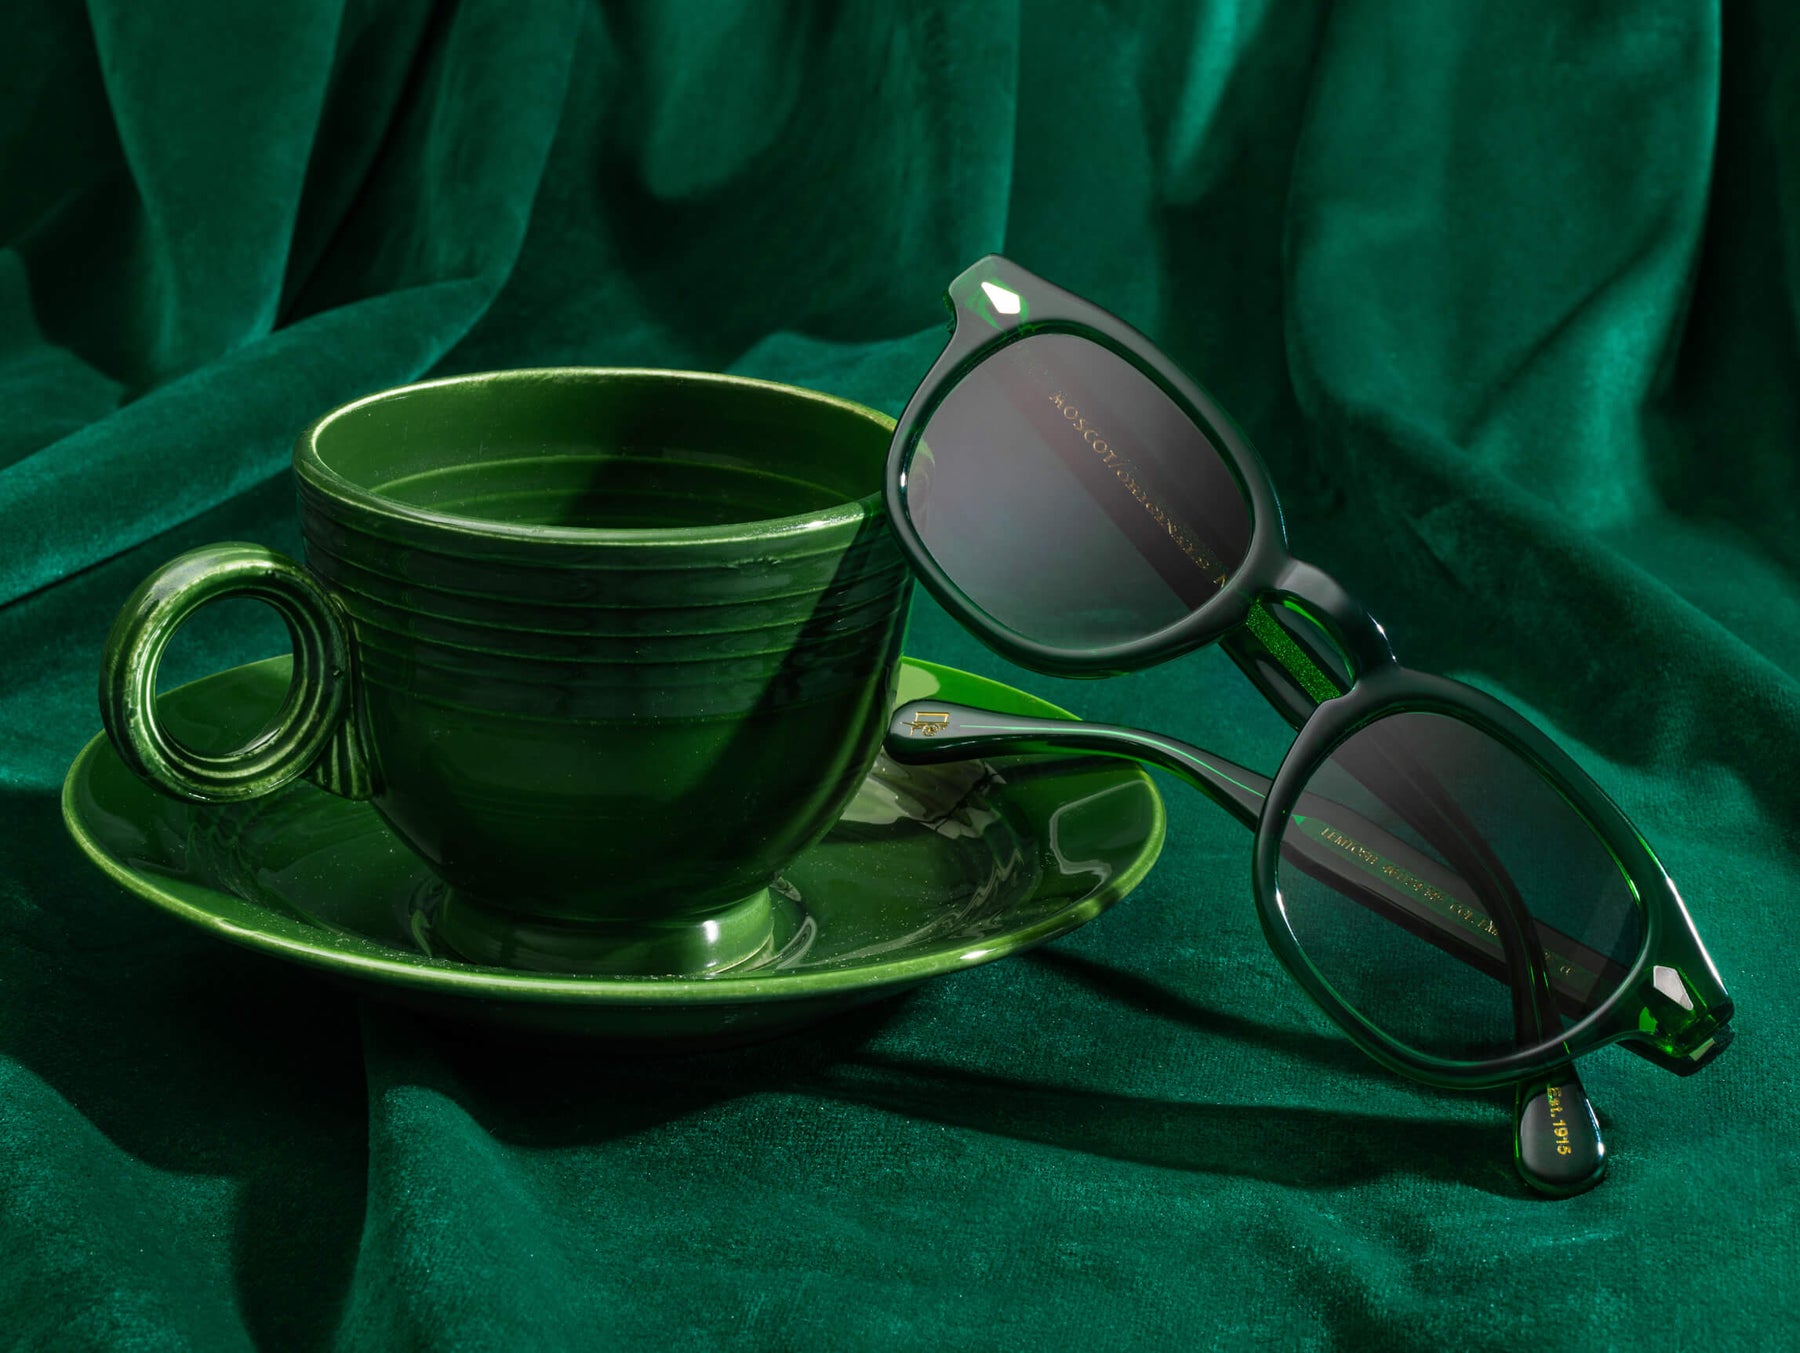 Cosette Emerald | Sunglasses, Sunglasses accessories, Emerald green